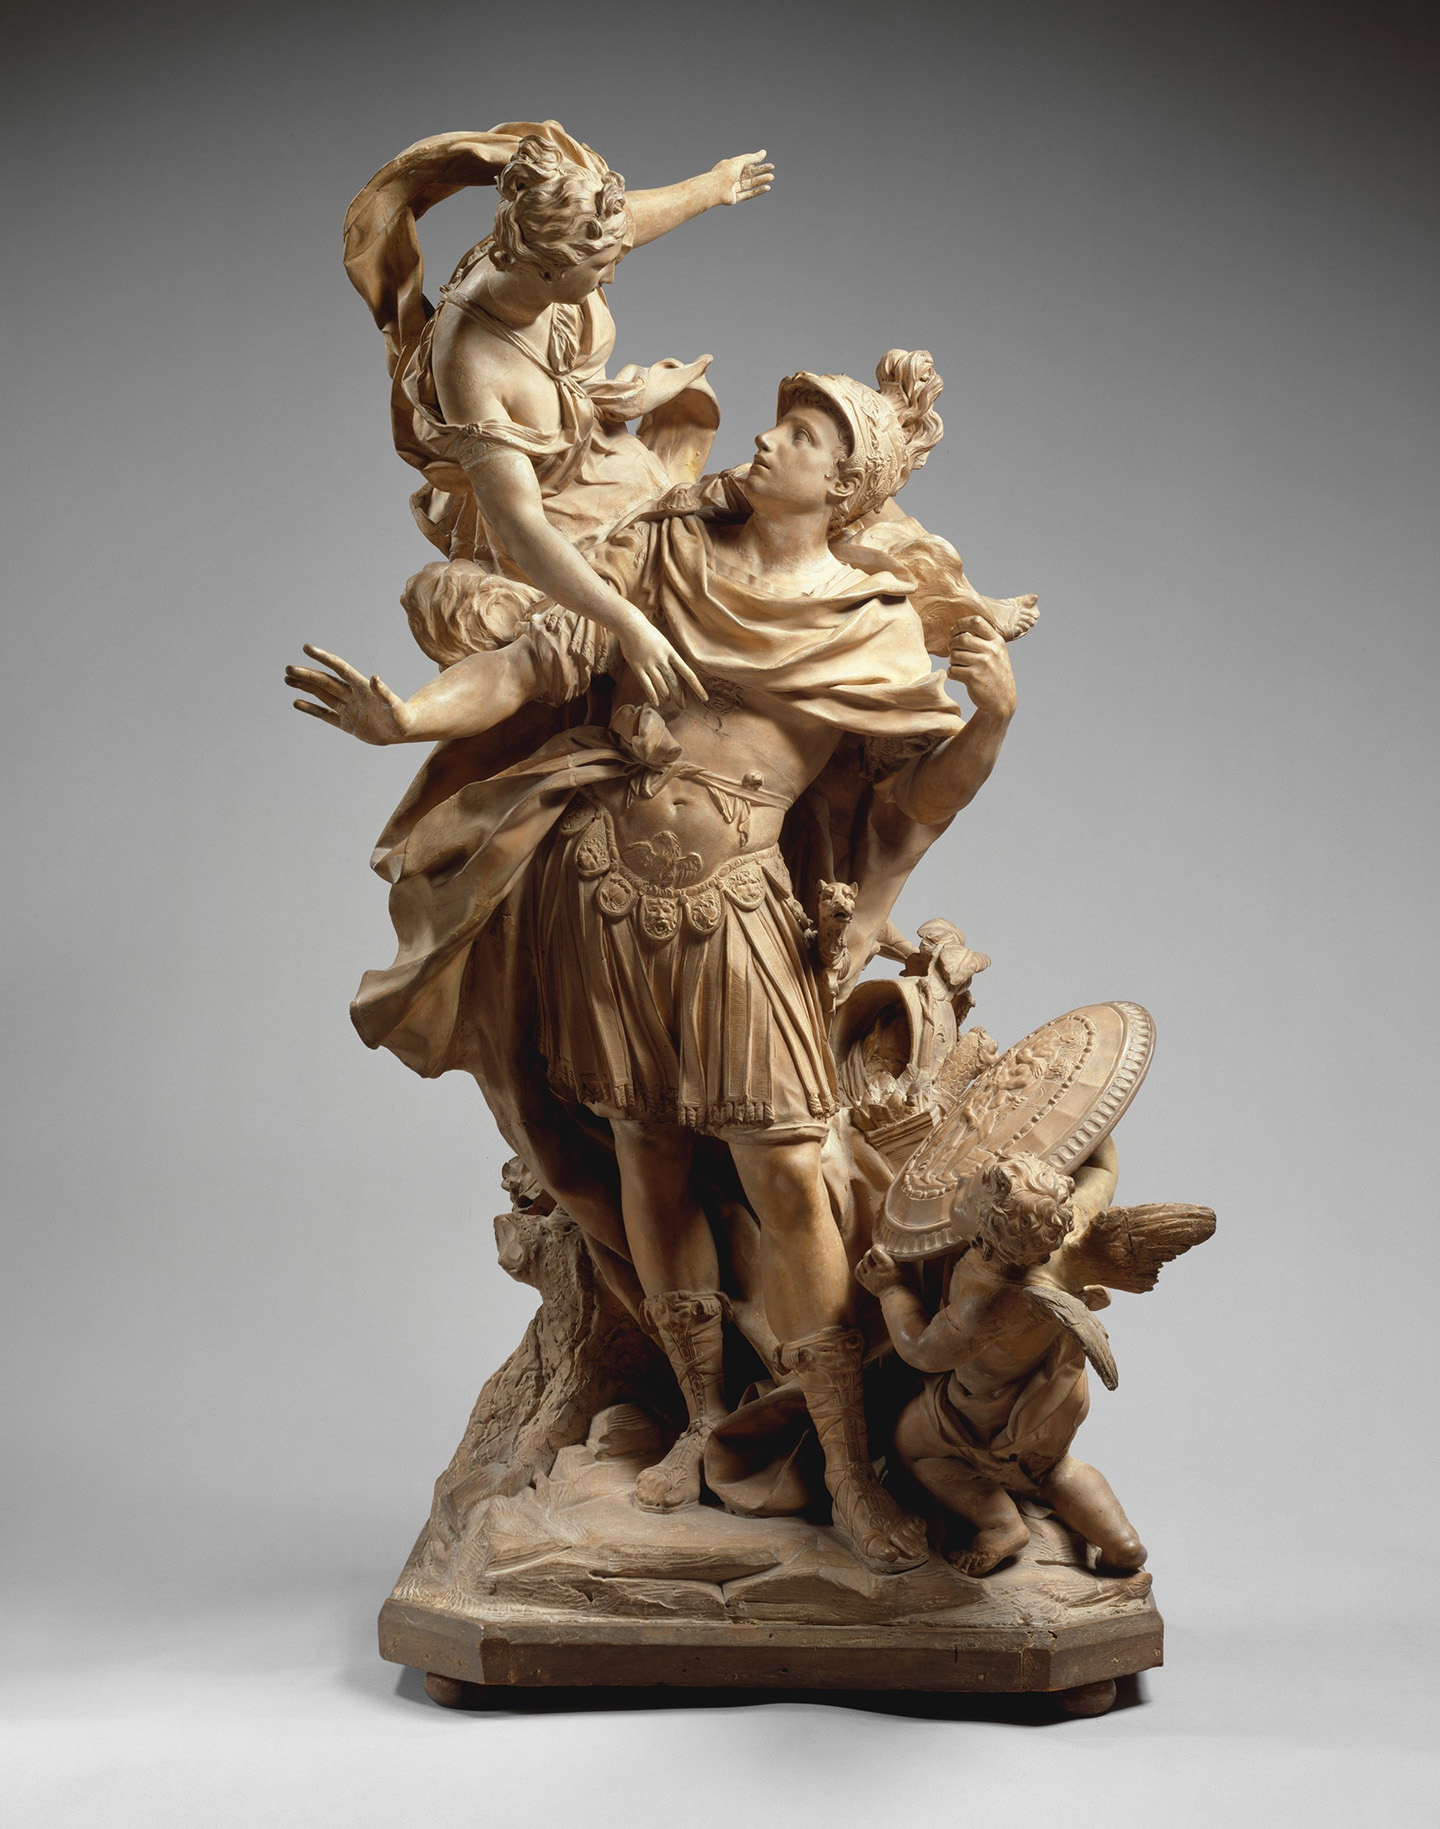 Tác phẩm “Venus Giving Arms to Aeneas” (Nữ thần Venus chìa tay ra cho chàng Aeneas) của điêu khắc gia Jean Cornu, sáng tác năm 1704. Tác phẩm điêu khắc bằng gỗ sơn và đất nung. Viện bảo tàng Nghệ thuật Metropolitan, Thành phố New York. (Ảnh: Tài liệu công cộng)